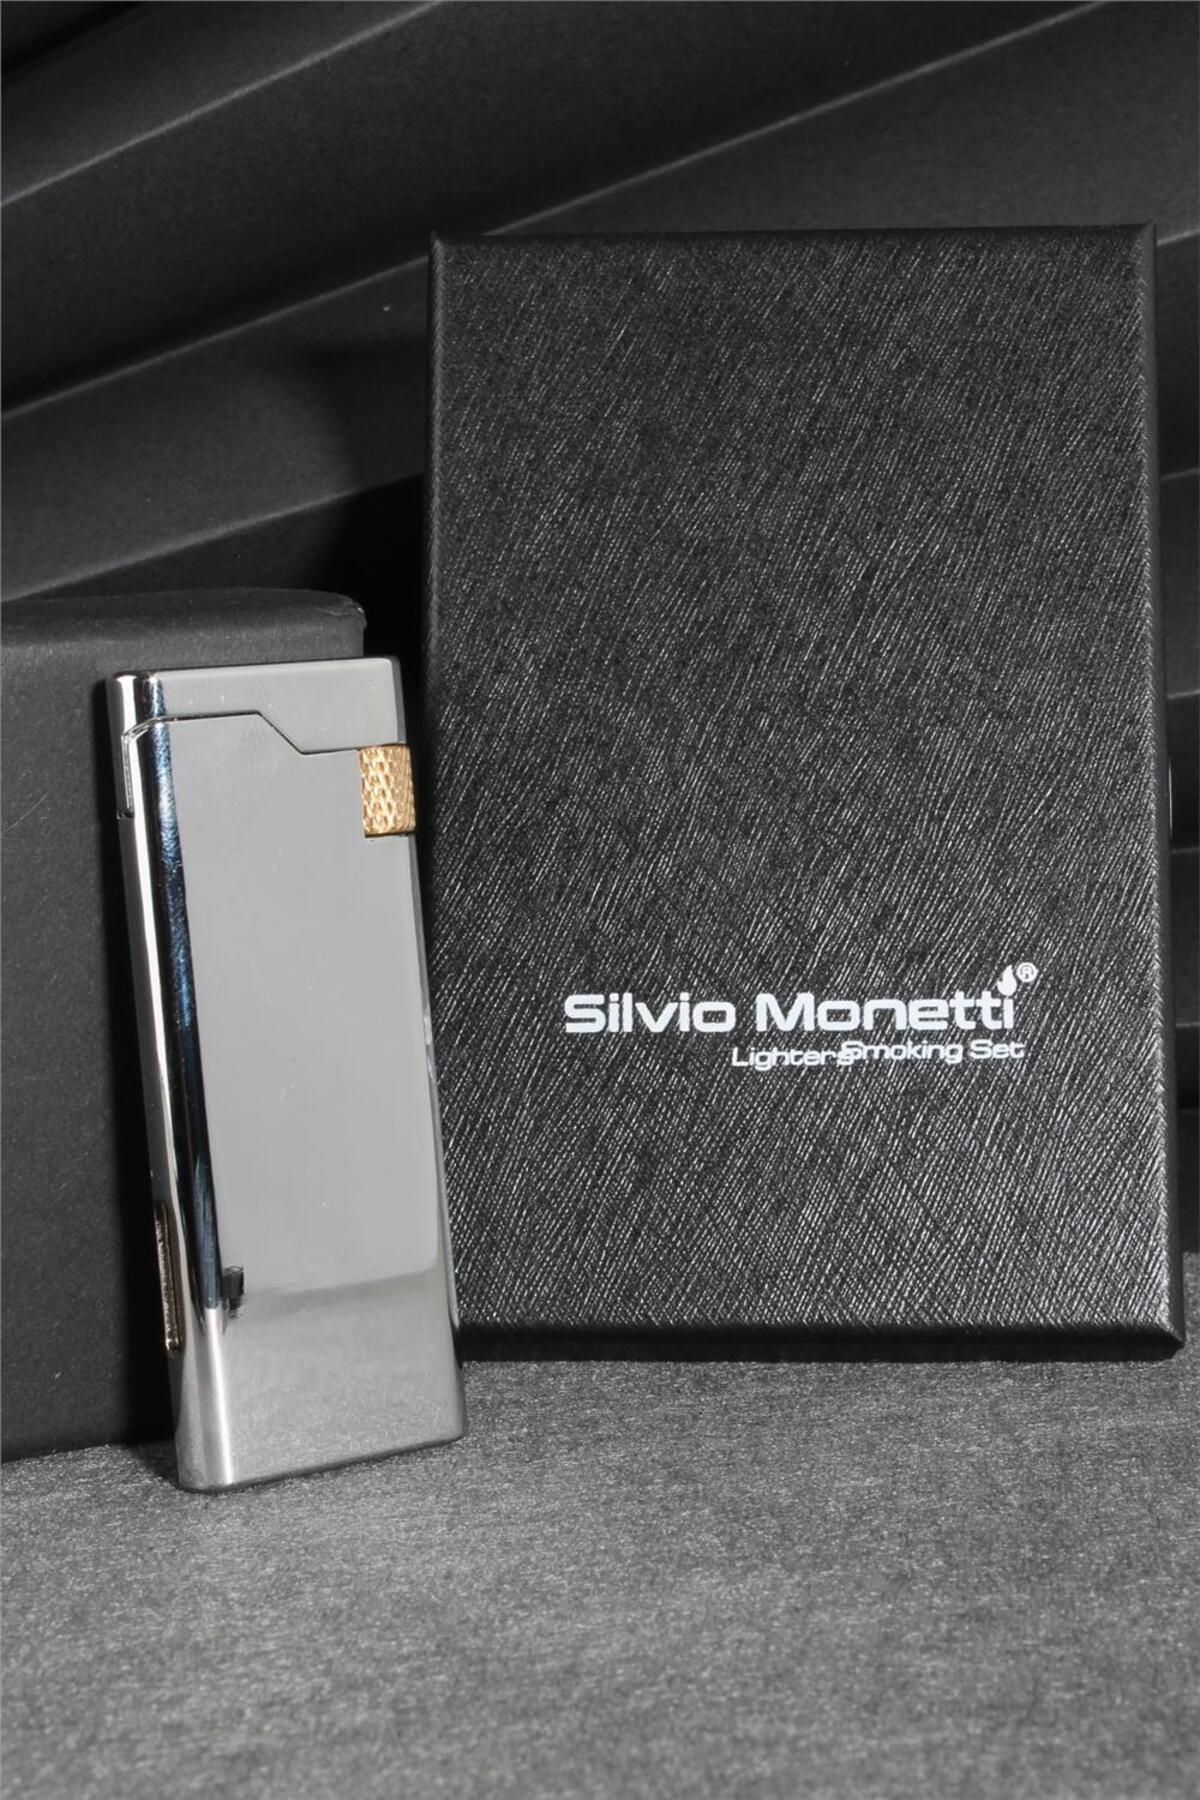 Silvio Monetti Gümüş Renk Kapaklı Gazlı Çakmak 24csm883tr02